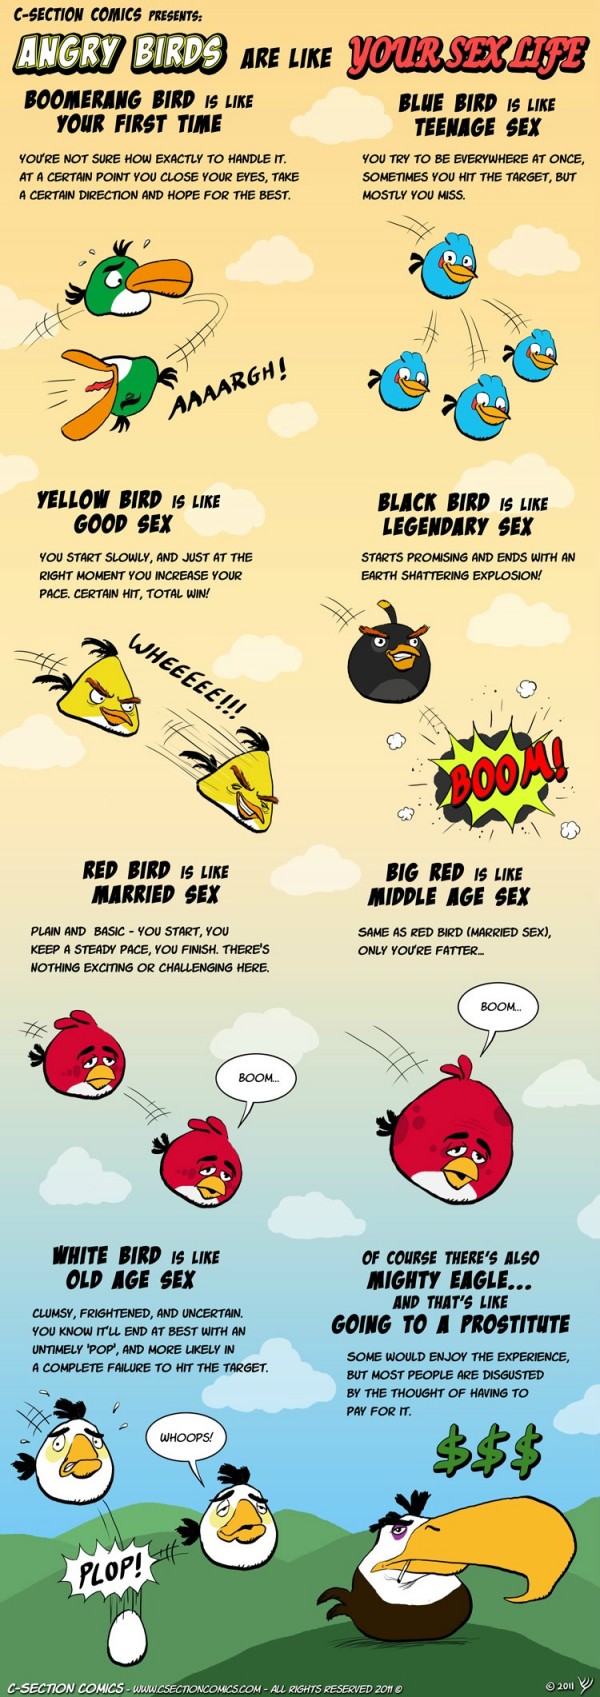 Cómic: Cómo se parece tu vida sexual a los Angry Birds